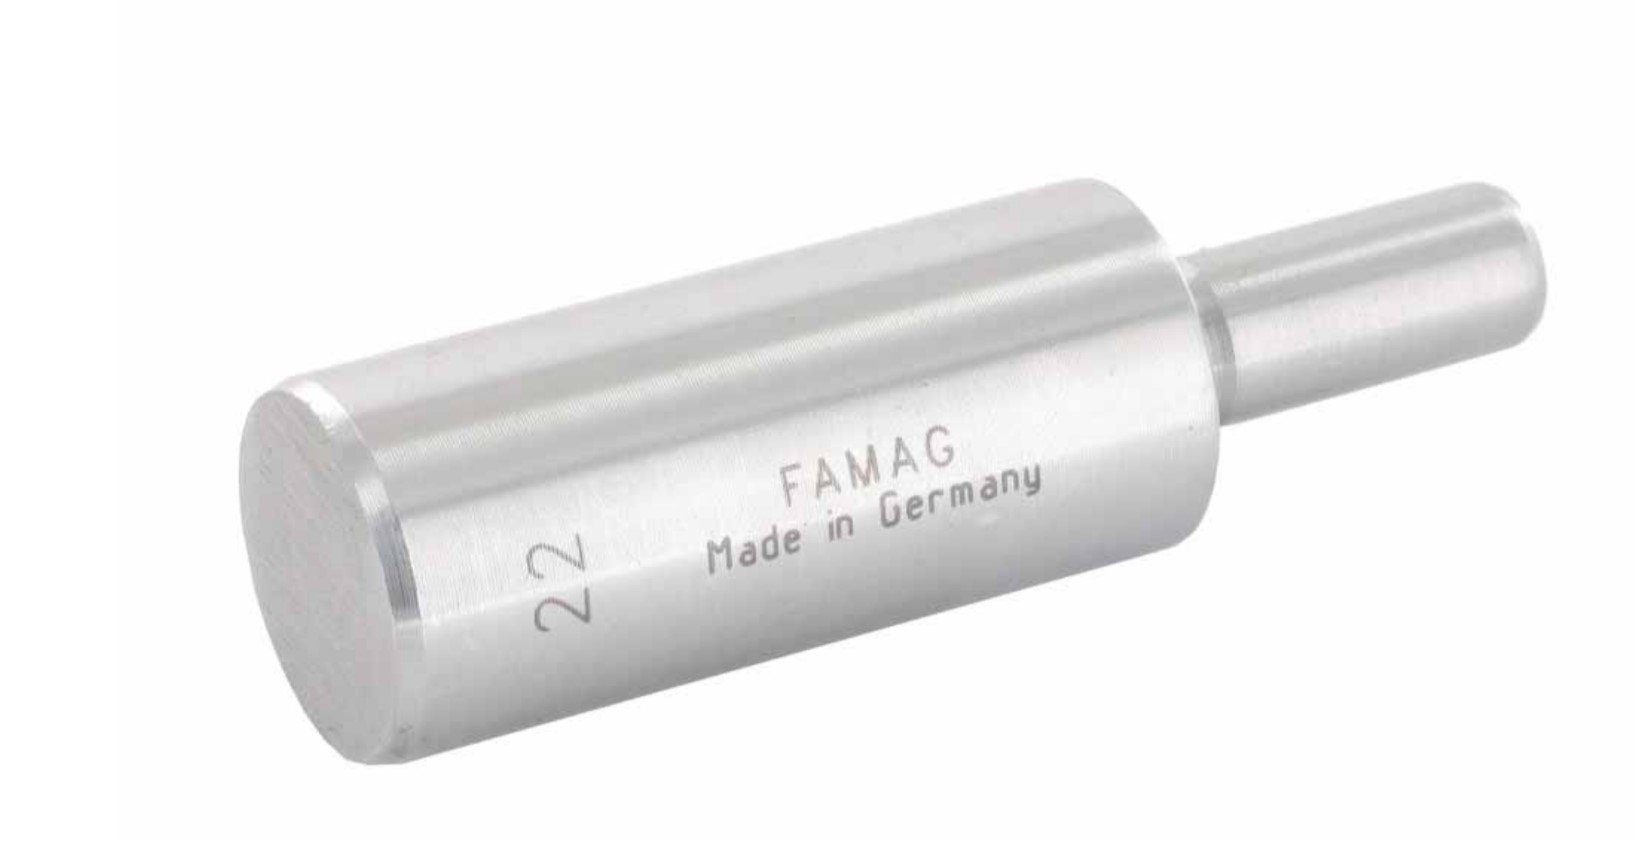 FAMAG 22mm, 8mm 50mm, Holzbohrer 1619.122 SØ GL FAMAG - 1614 NL zu Führungszapfen 75mm,